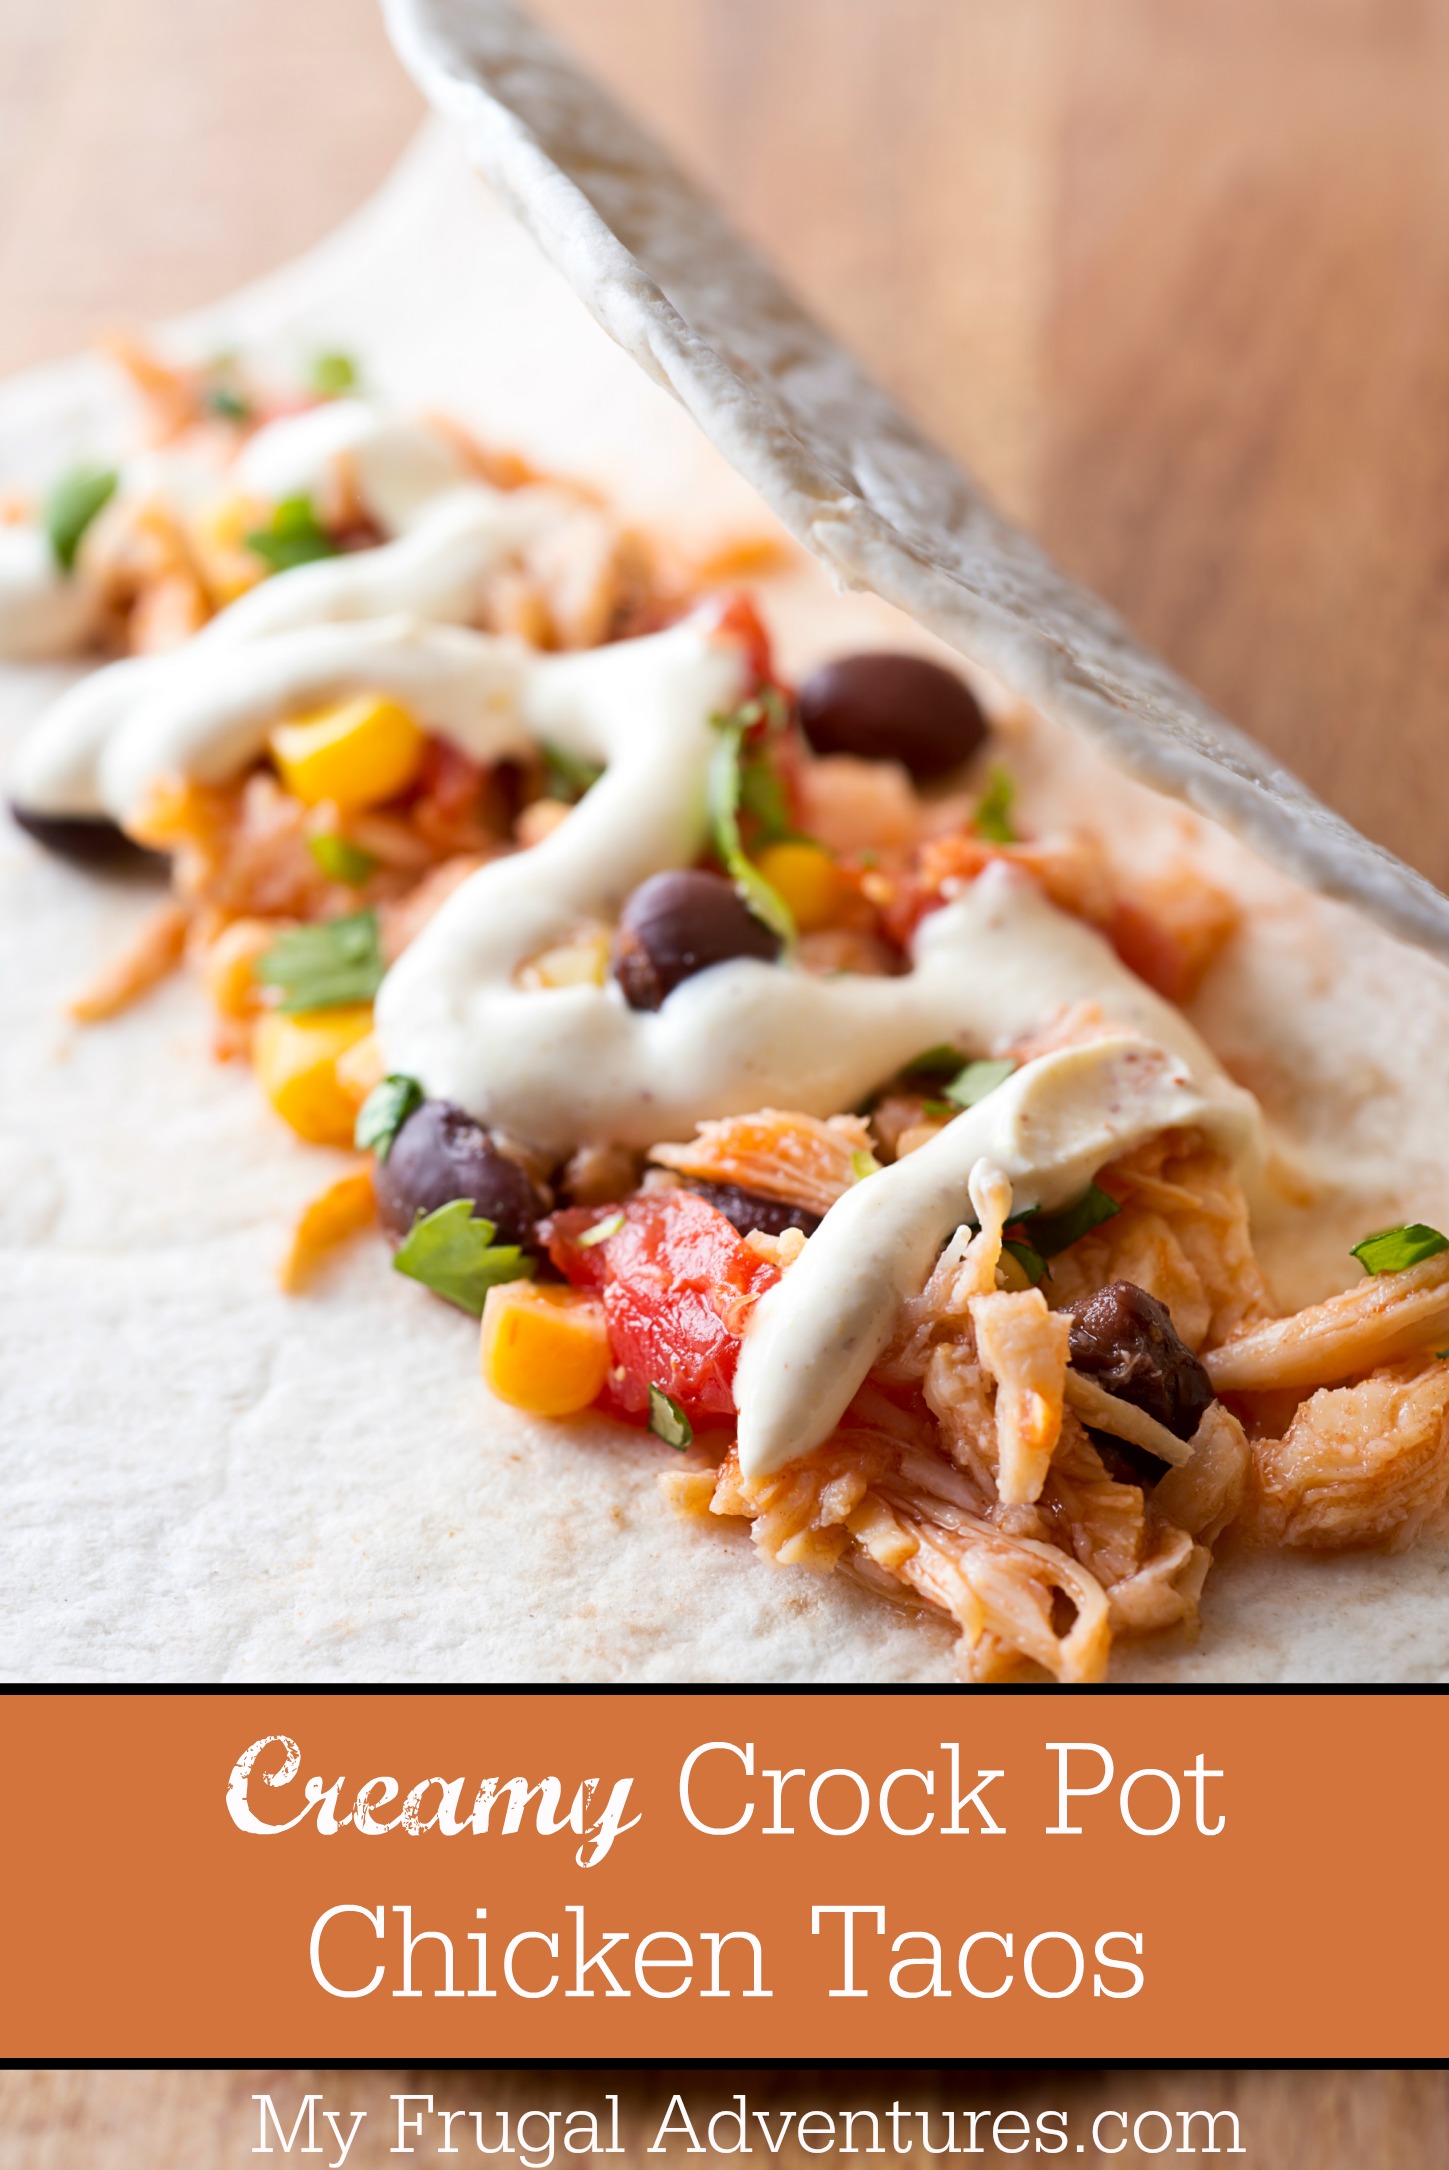 Creamy Crock Pot Chicken Tacos Recipe - My Frugal Adventures